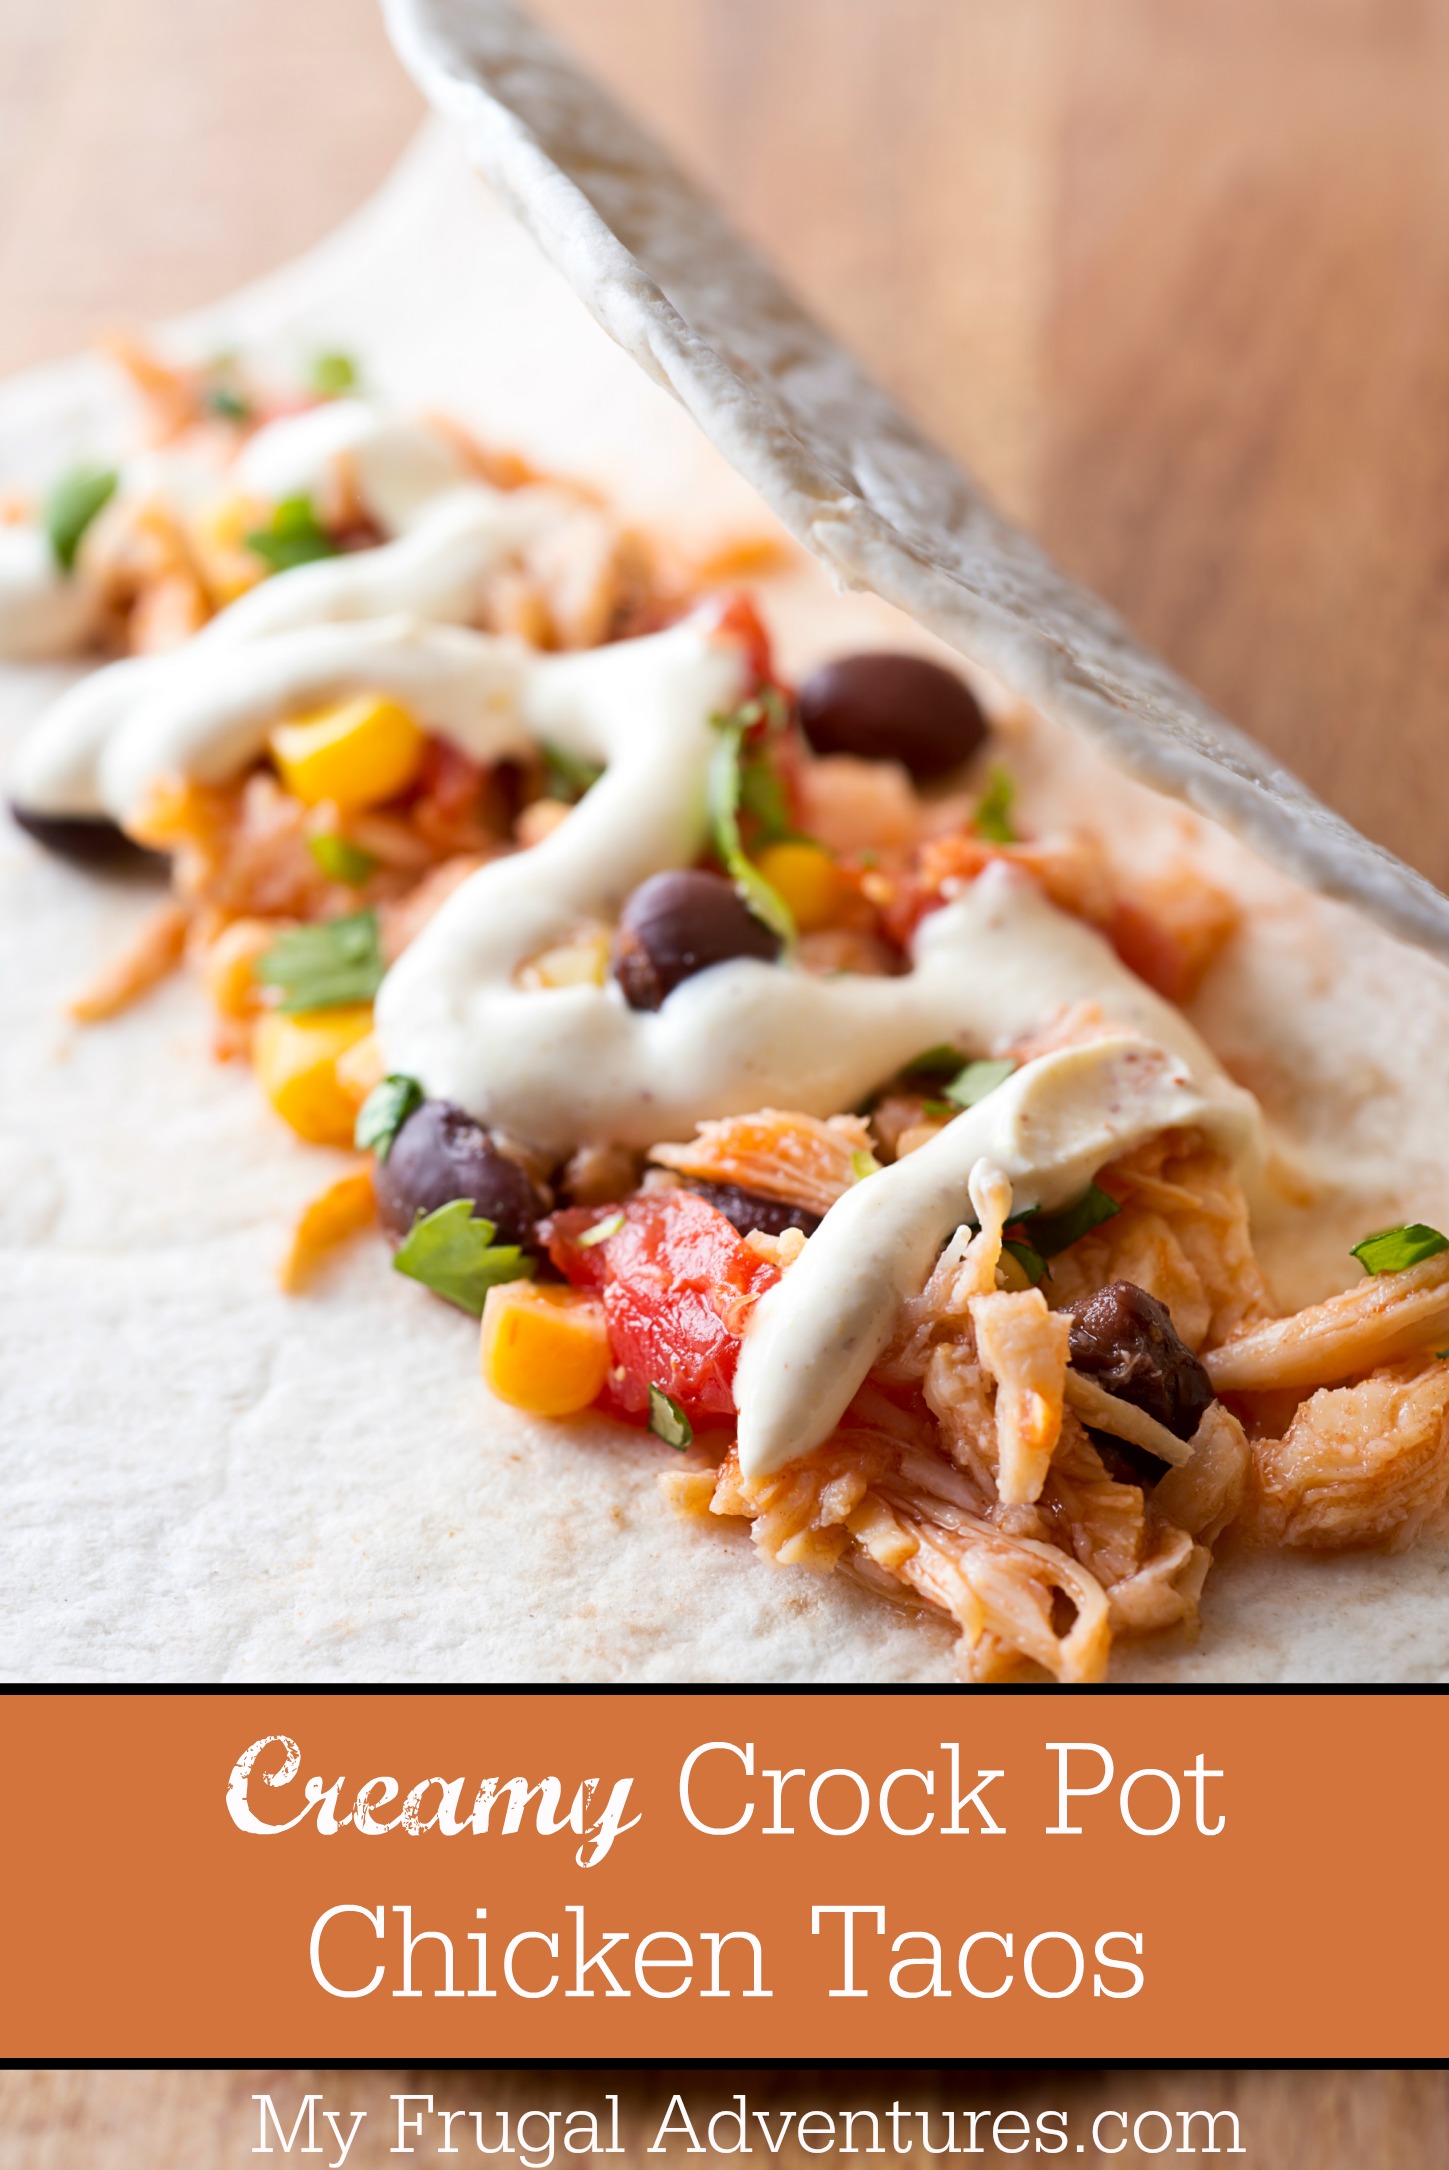 Creamy Crock Pot Chicken Tacos Recipe - My Frugal Adventures